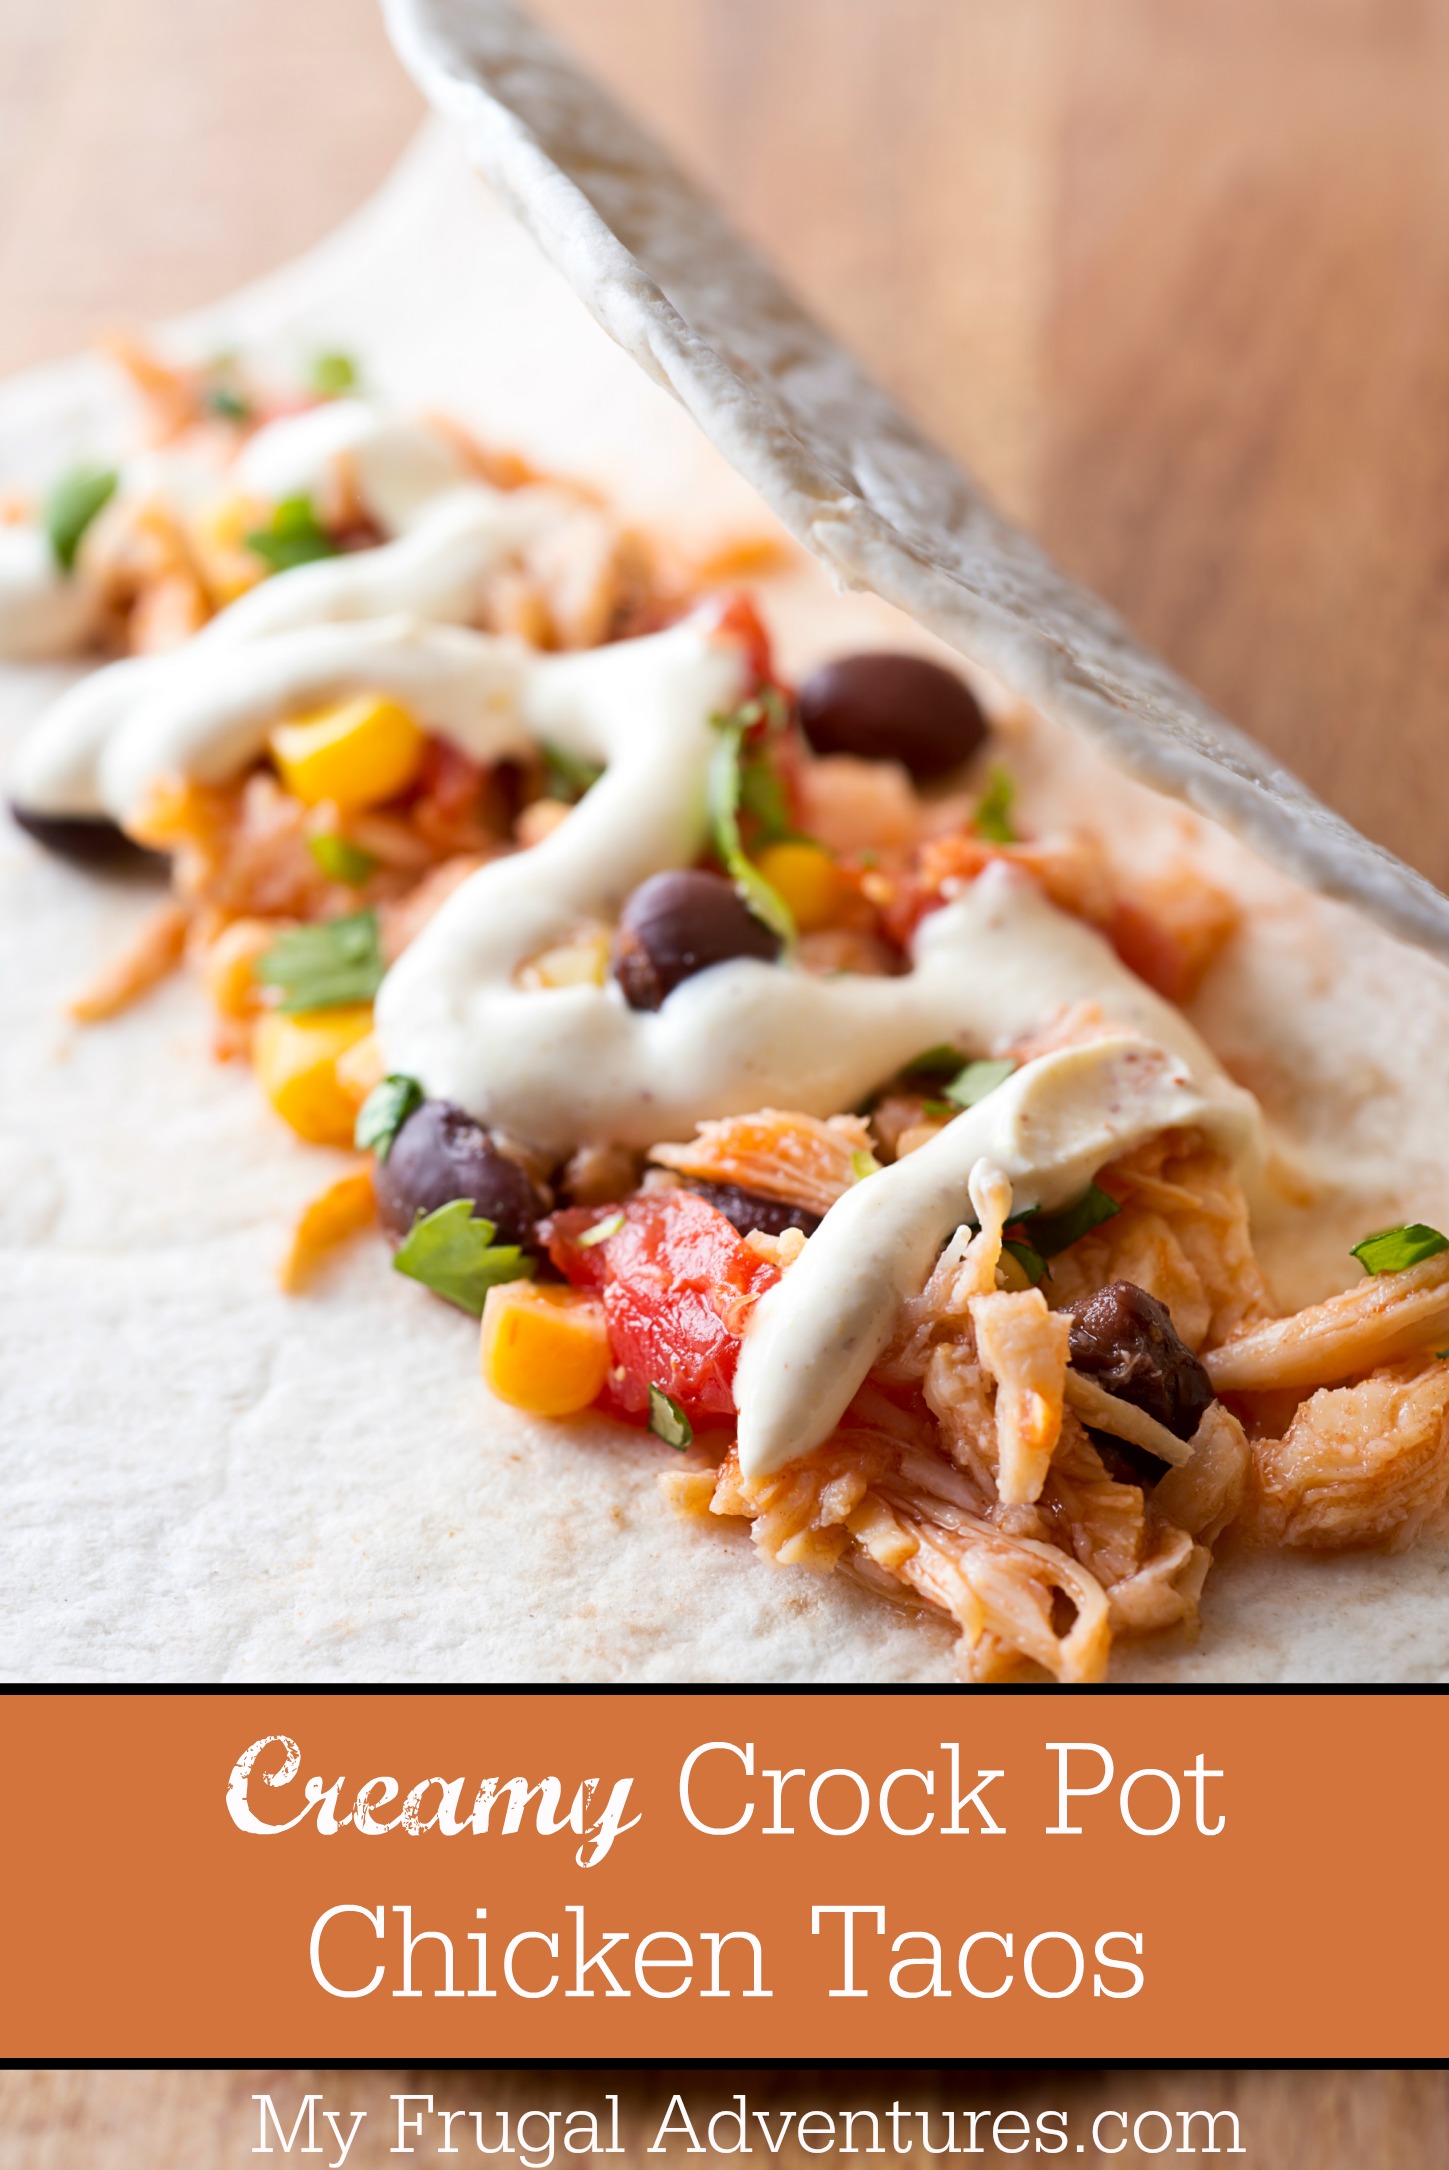 Creamy Crock Pot Chicken Tacos Recipe - My Frugal Adventures